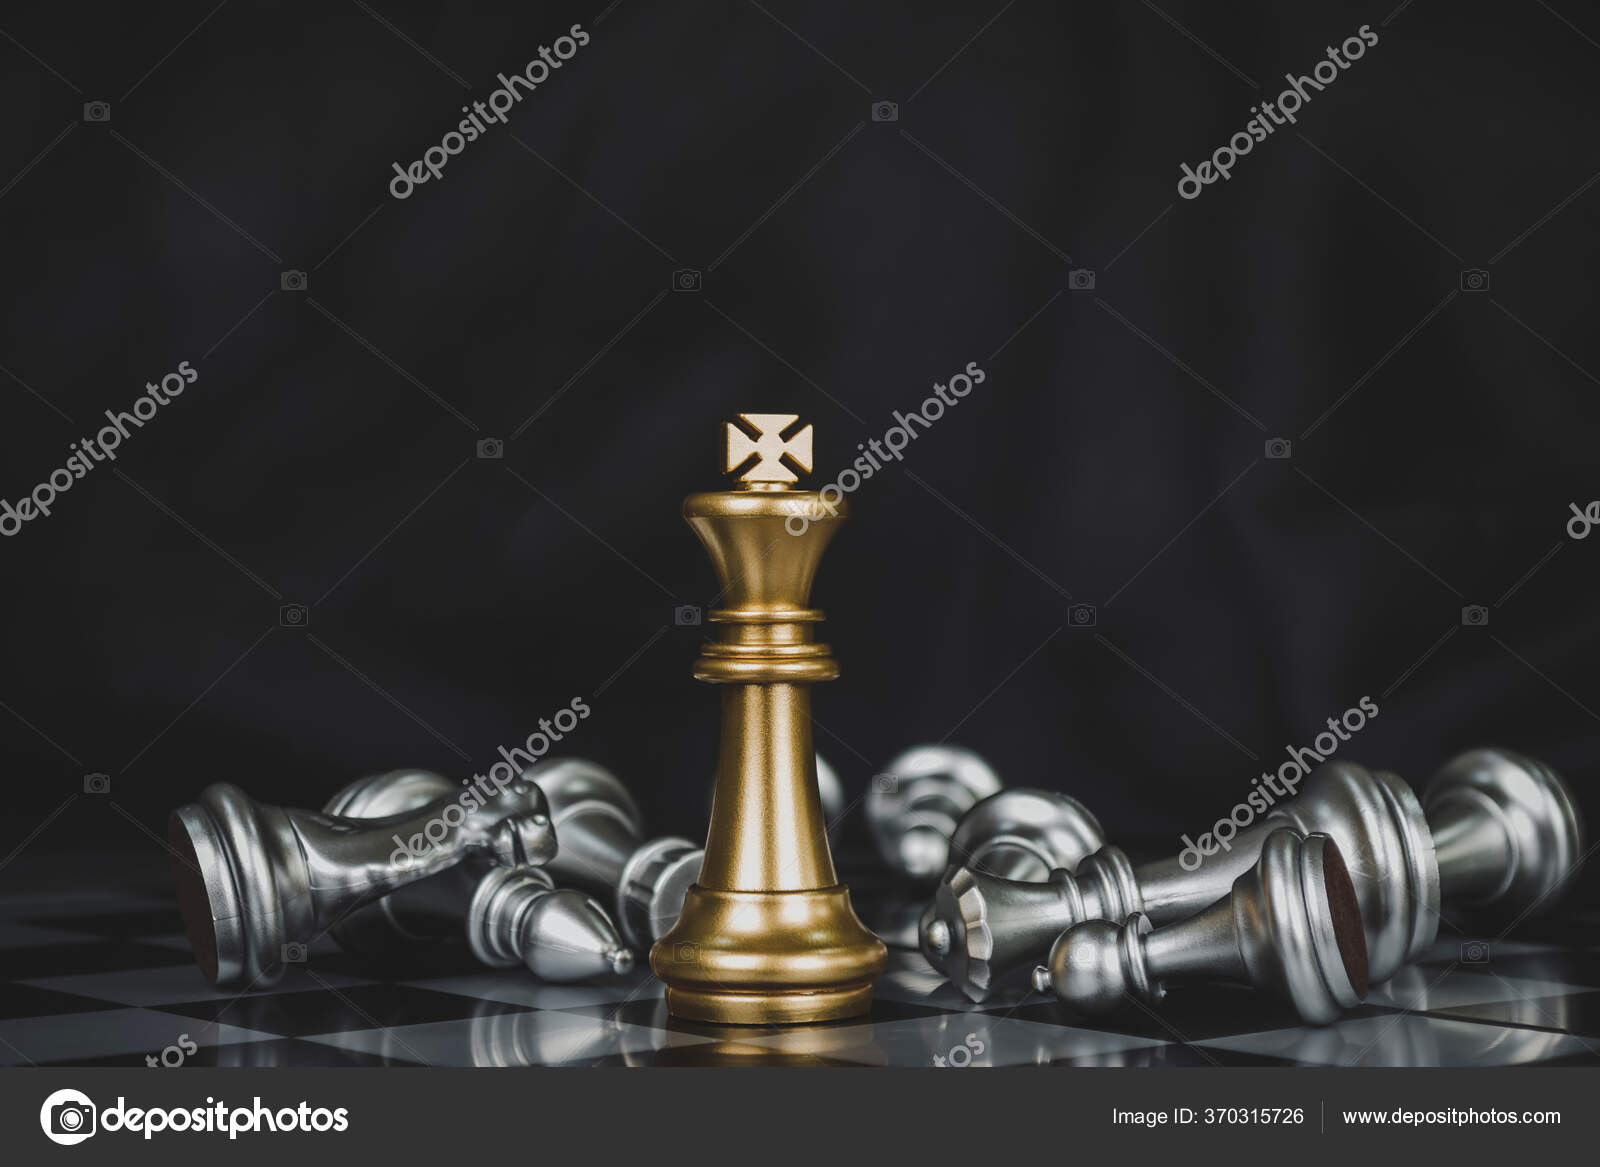 Imagem do jogo de xadrez liderança de estratégia de competição de